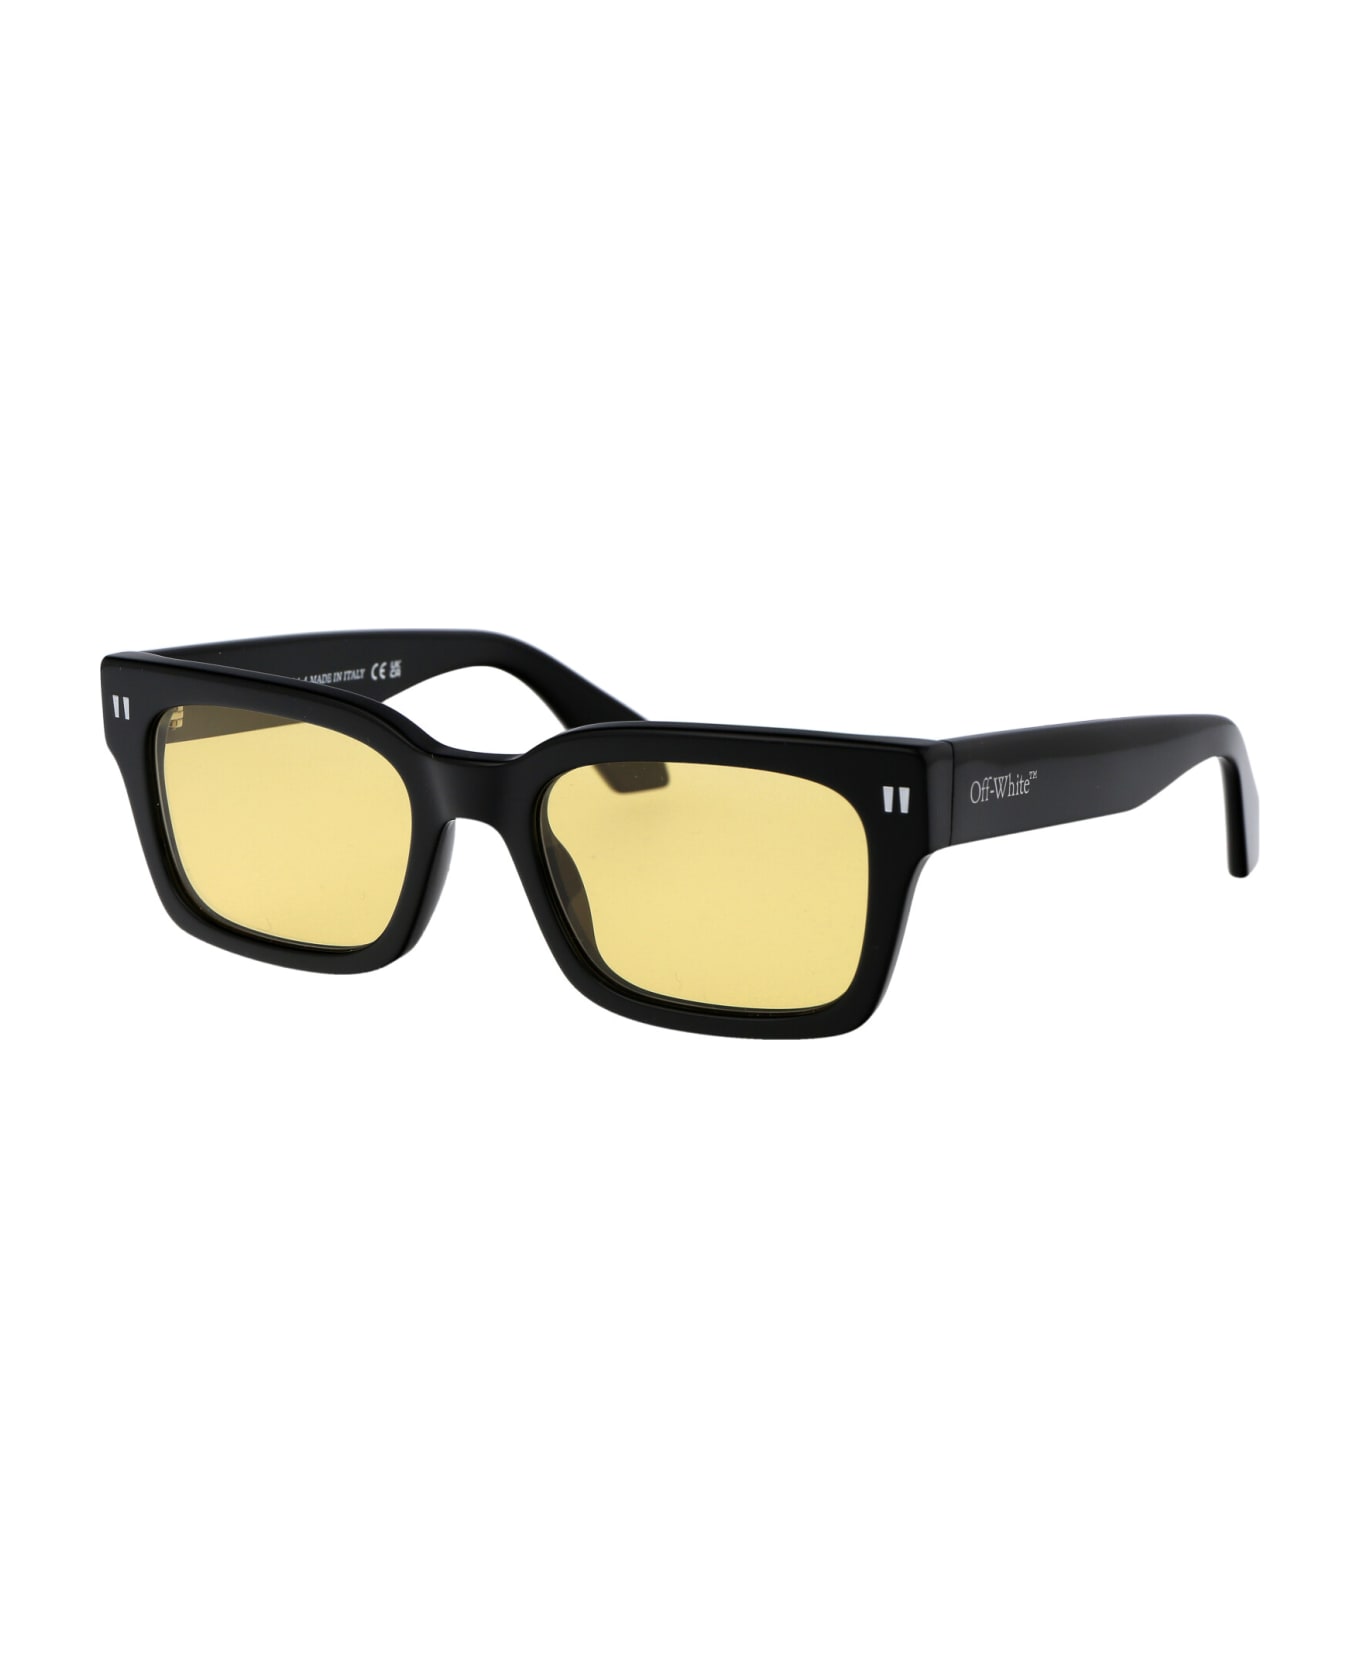 Off-White Midland Sunglasses - 1018 BLACK